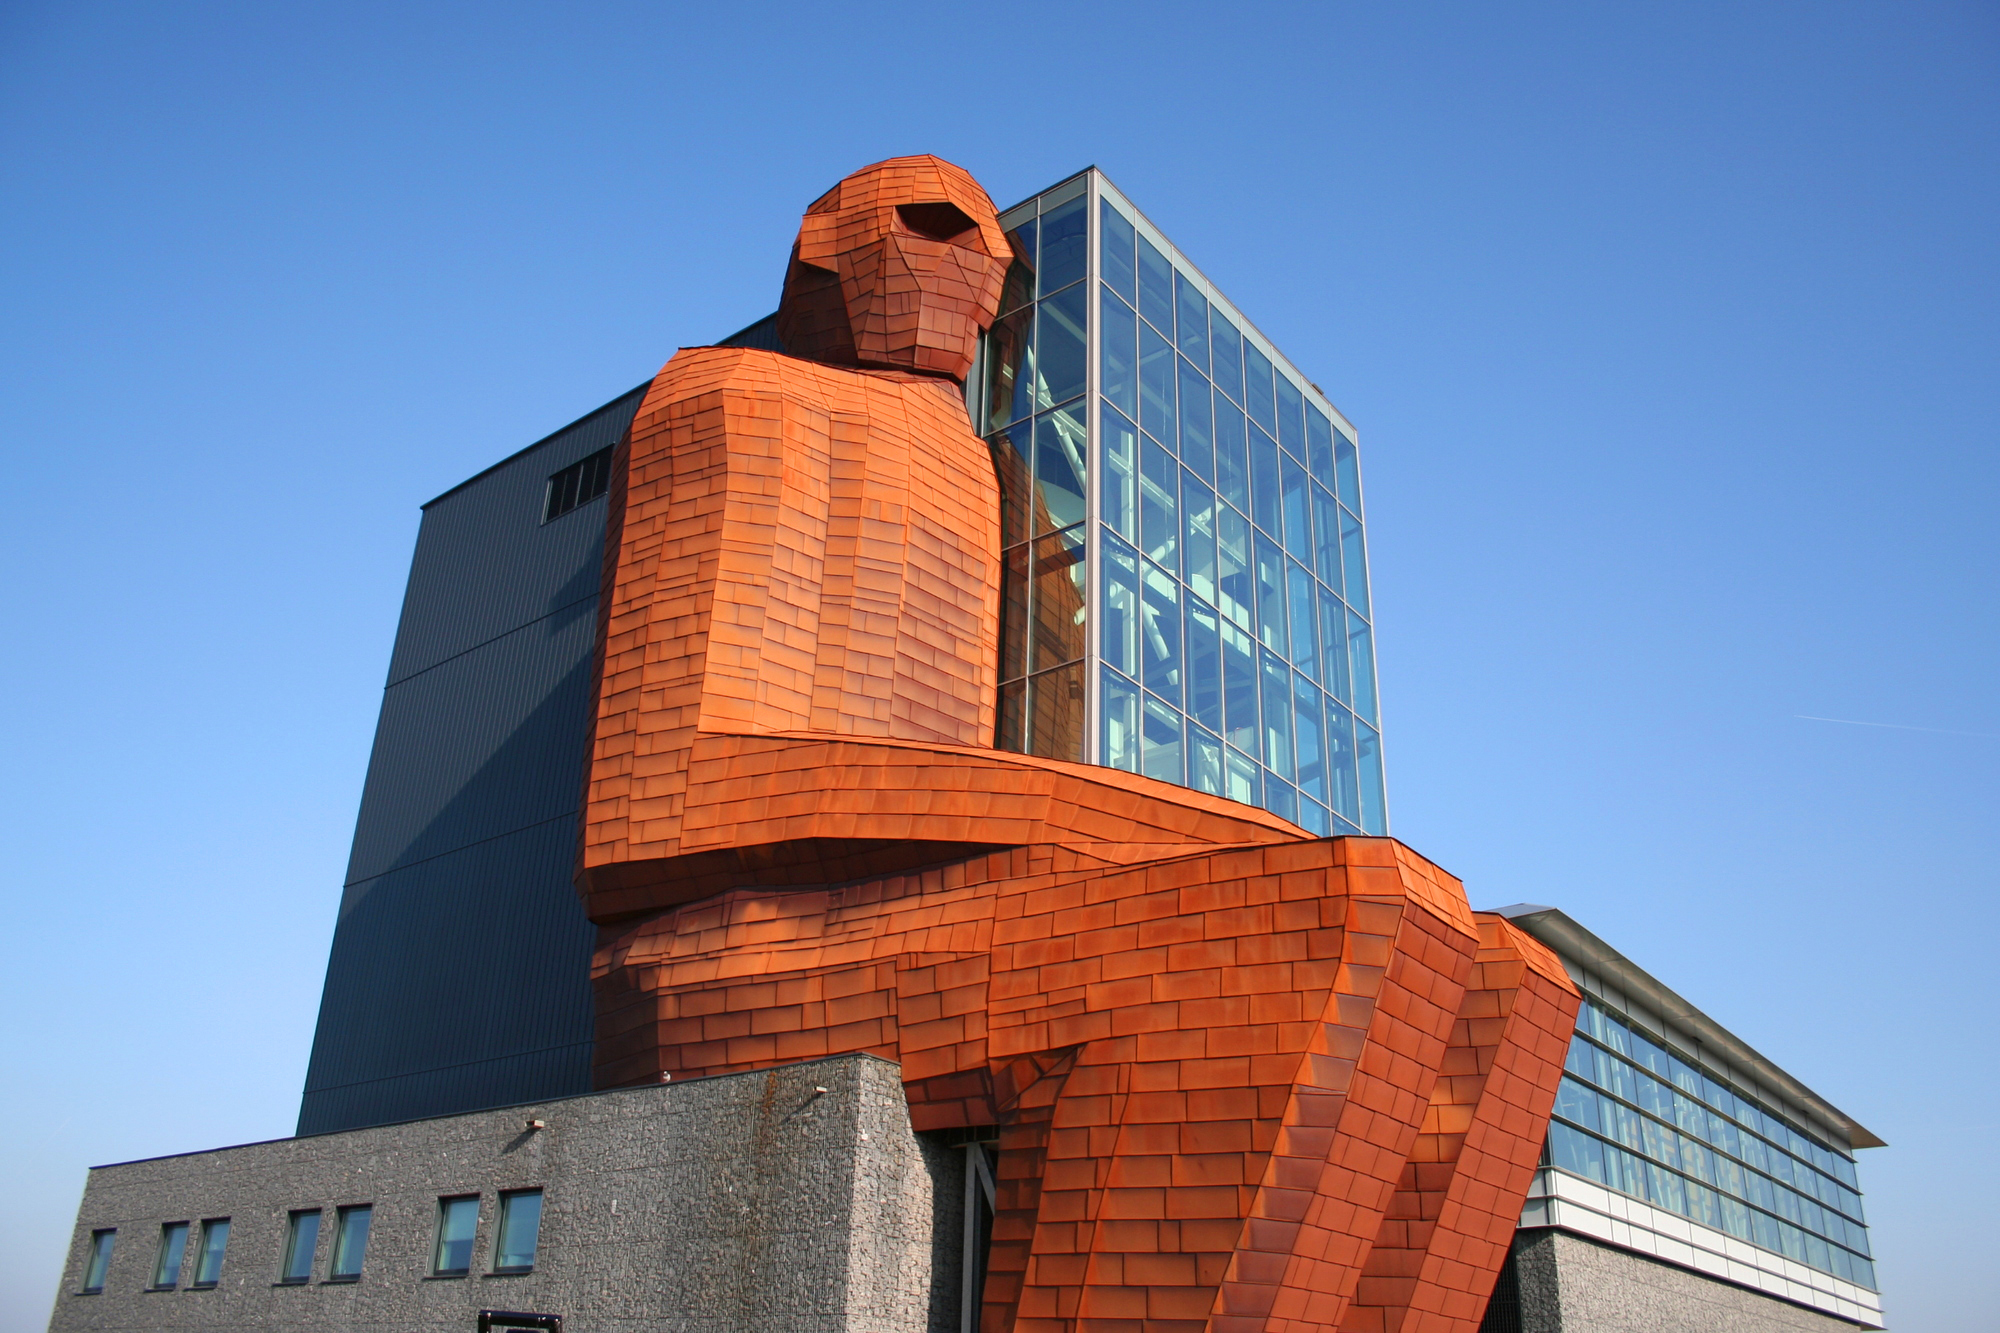 музей человеческого тела нидерланды